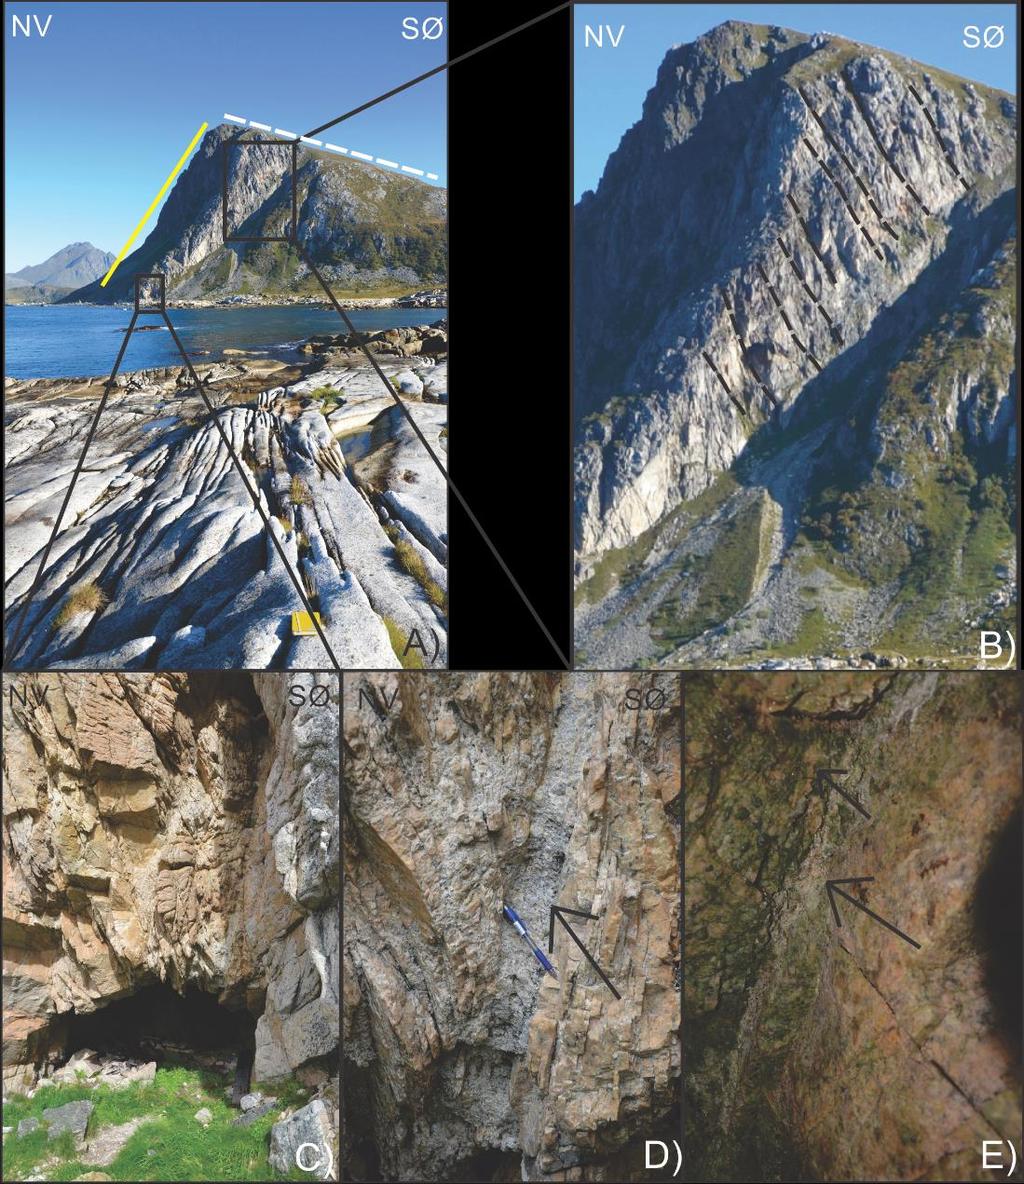 Ved foten av Offersøykammen er det en brenningshule som går vel 20 meter inn i fjellet (Fig. 19 a, c,d,e) (Brenningshuler dannes ofte i sprekkesoner (Lauritzen, 2010)).